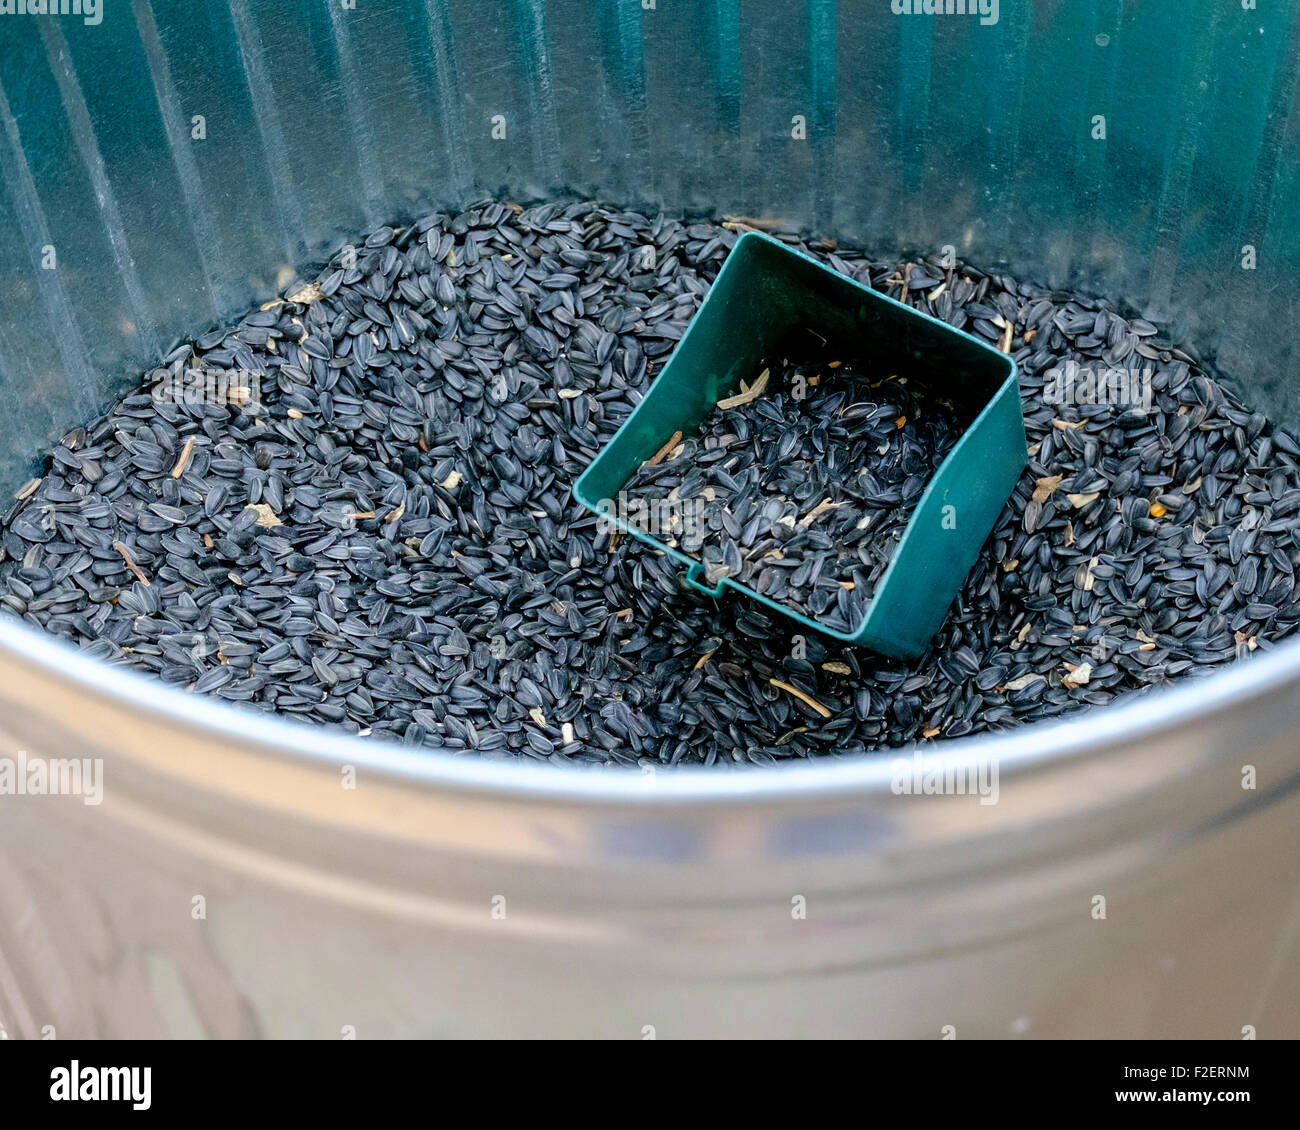 Un bac rempli de graines de tournesol, montrant un scoop. Une des graines  pour nourrir les oiseaux sauvages Photo Stock - Alamy